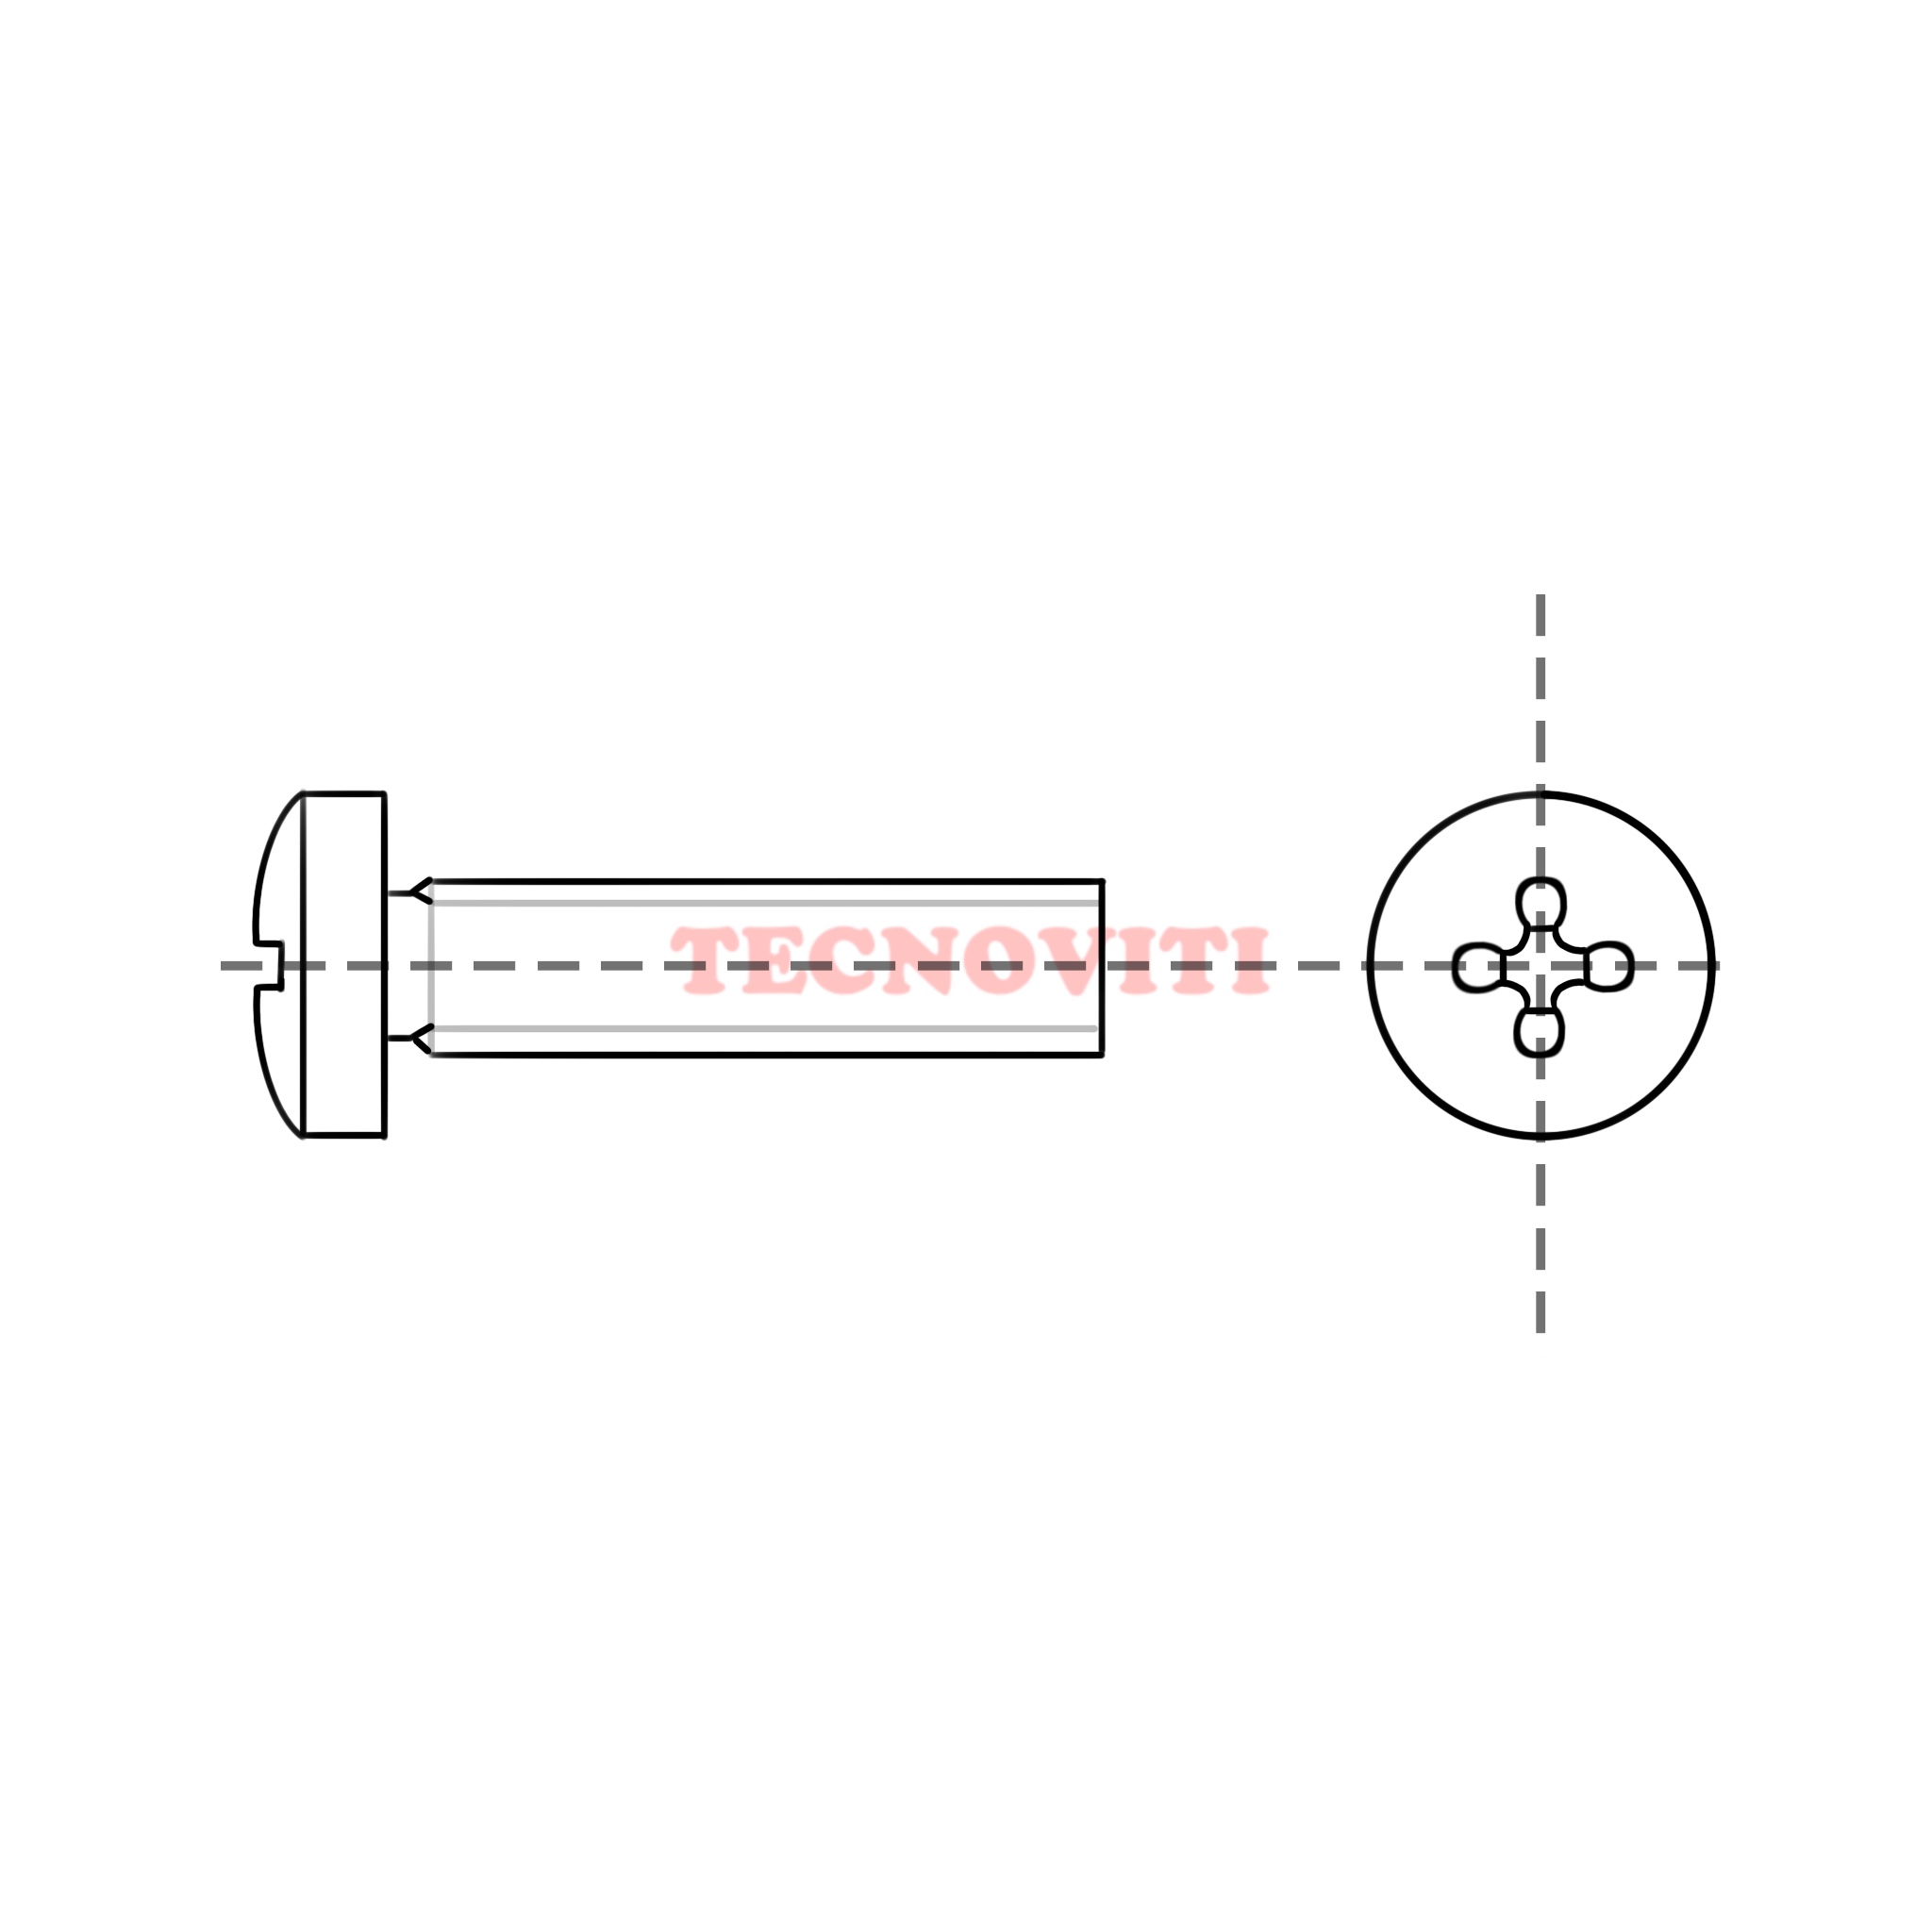 Disegno tecnico Viti con testa cilindrica ed impronta croce (TC+) in pollici, passo fine americano UNF. TECNOCODE: 7687UNF